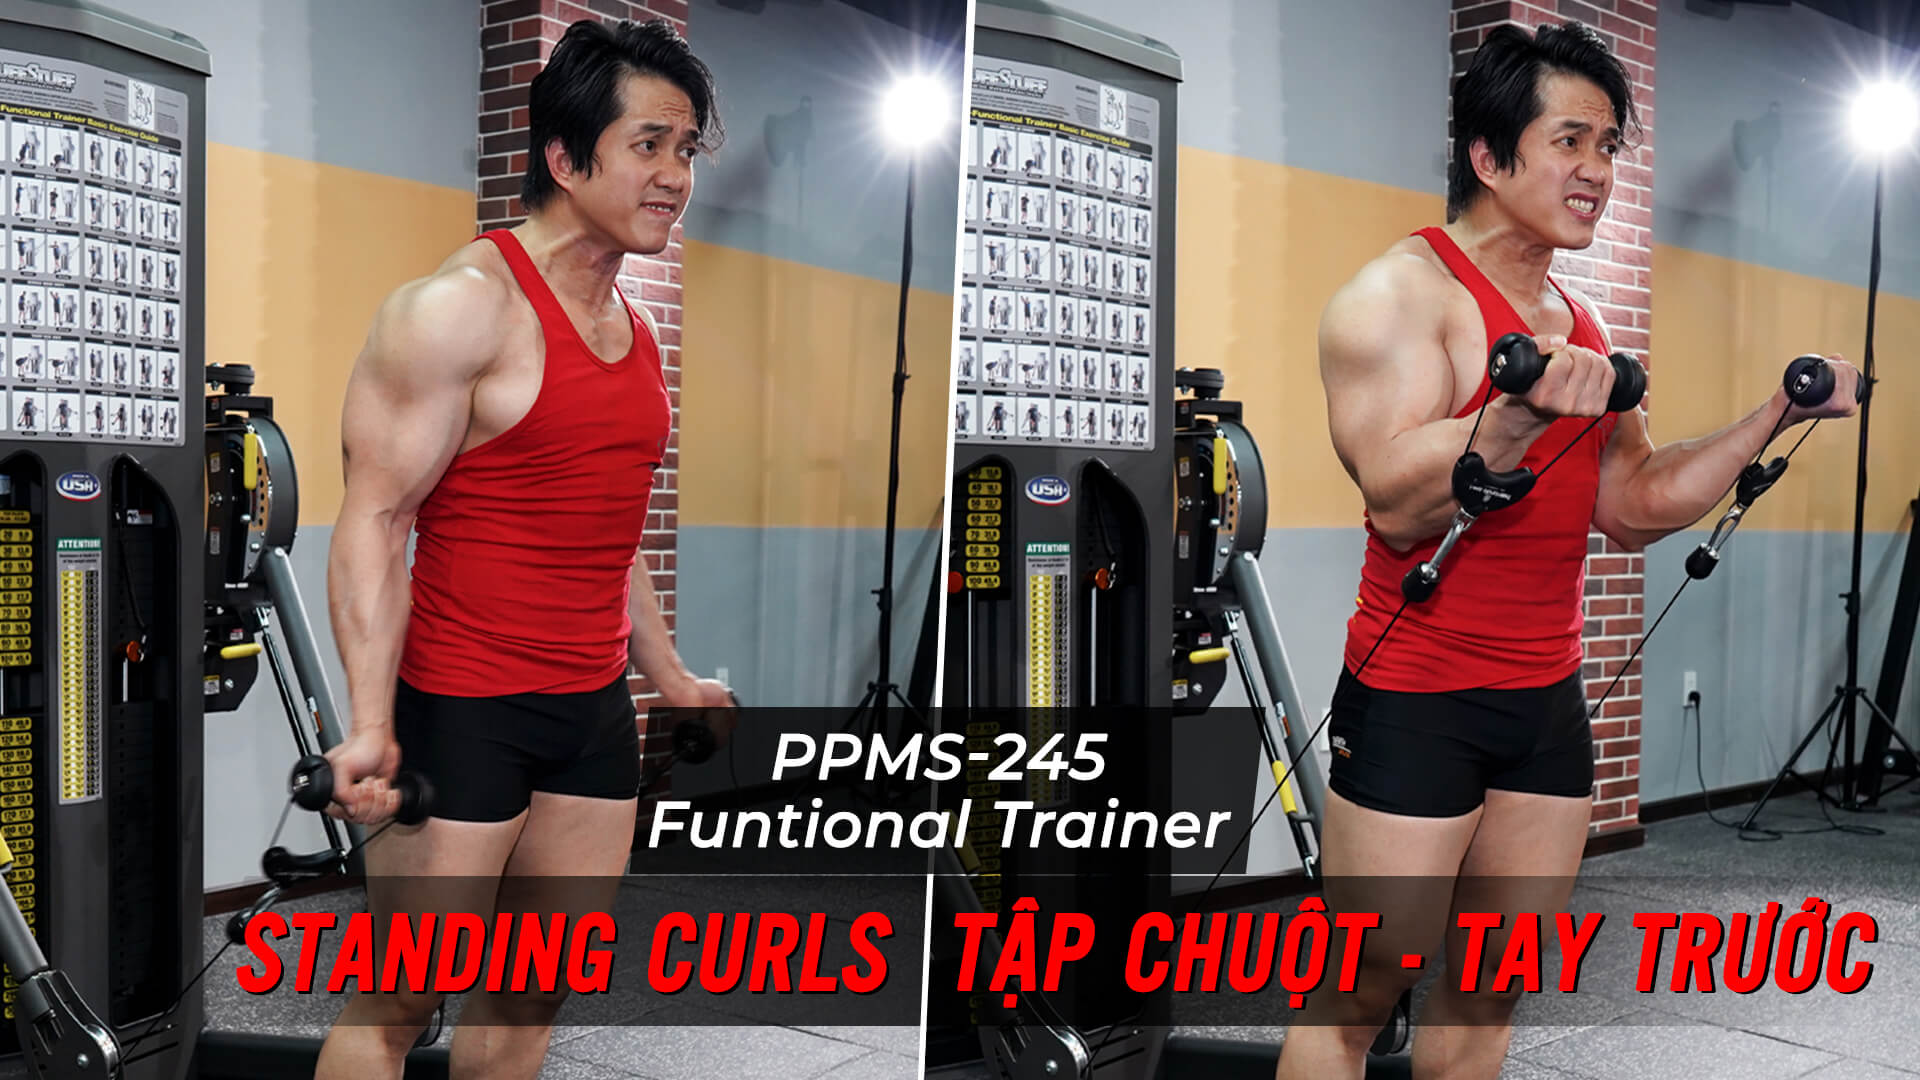 Standing Curls - Cách tập tay trước với Functional Trainer (PPMS-245)